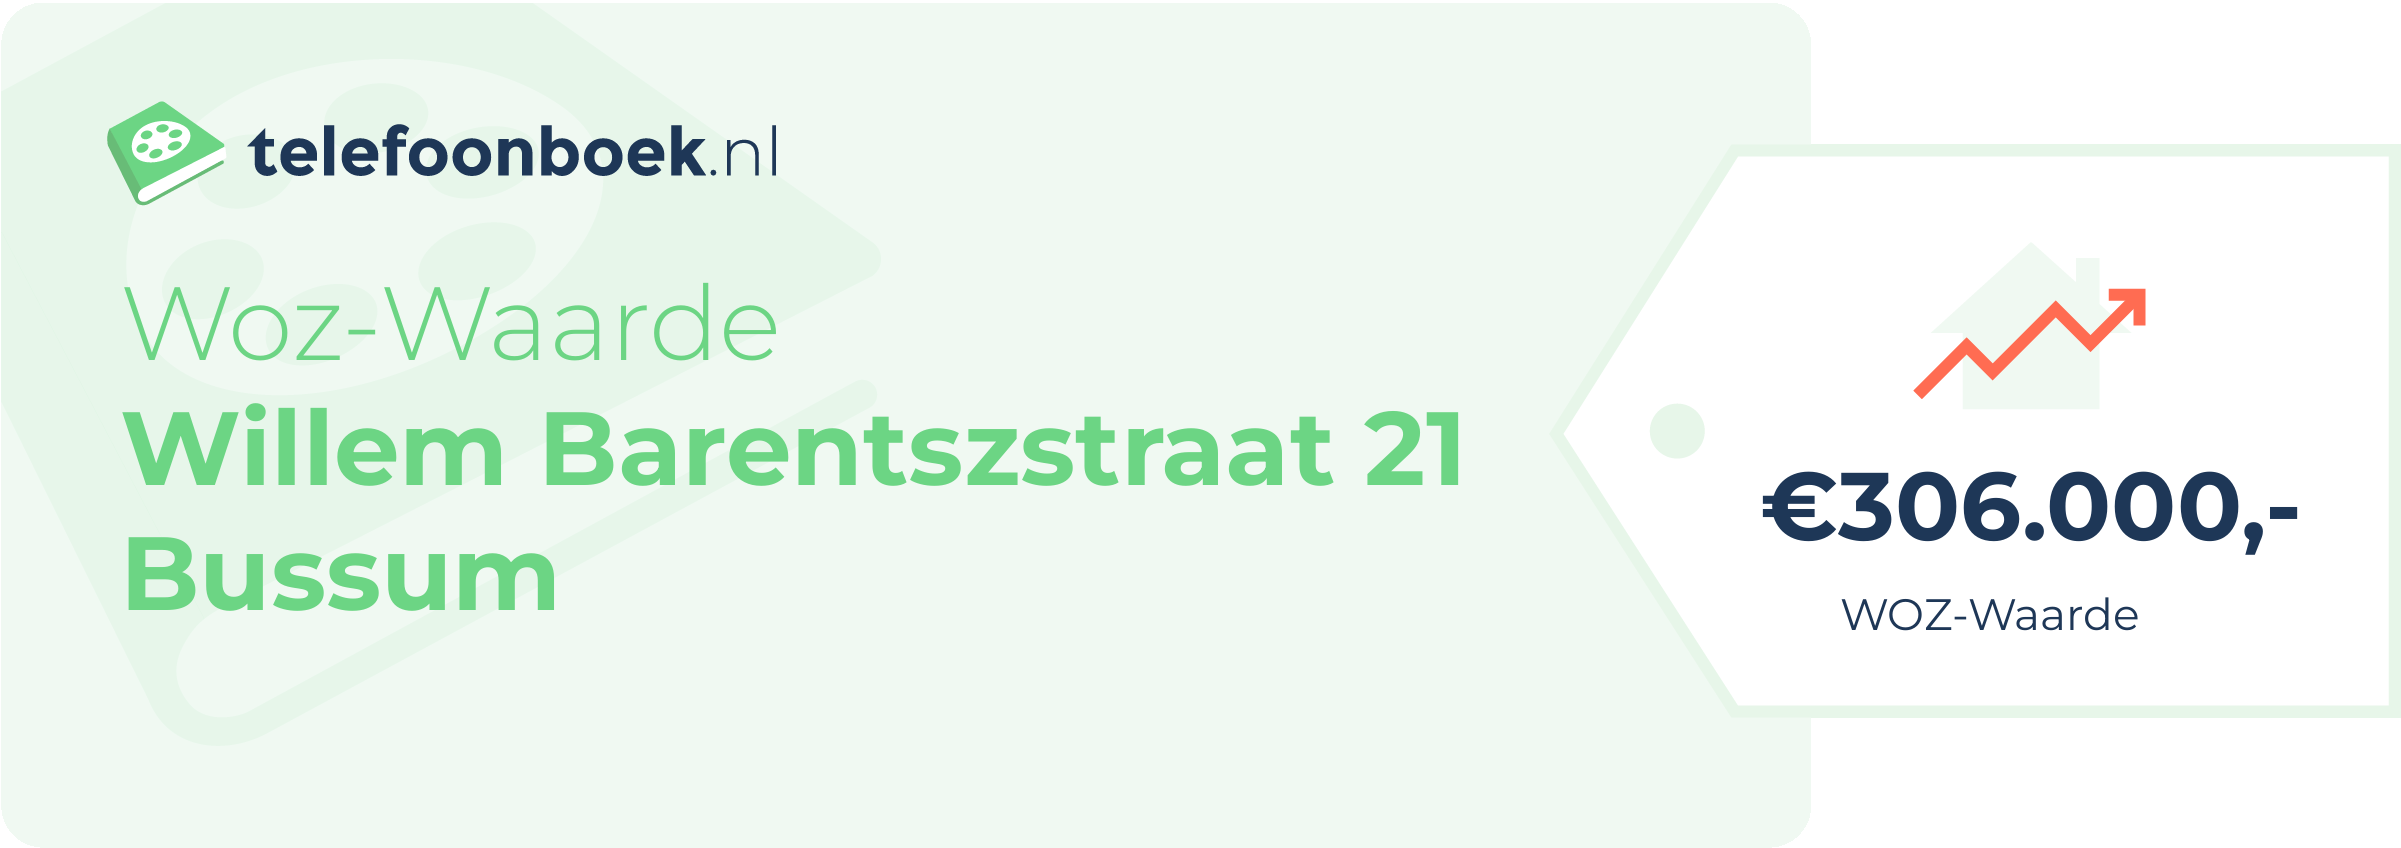 WOZ-waarde Willem Barentszstraat 21 Bussum